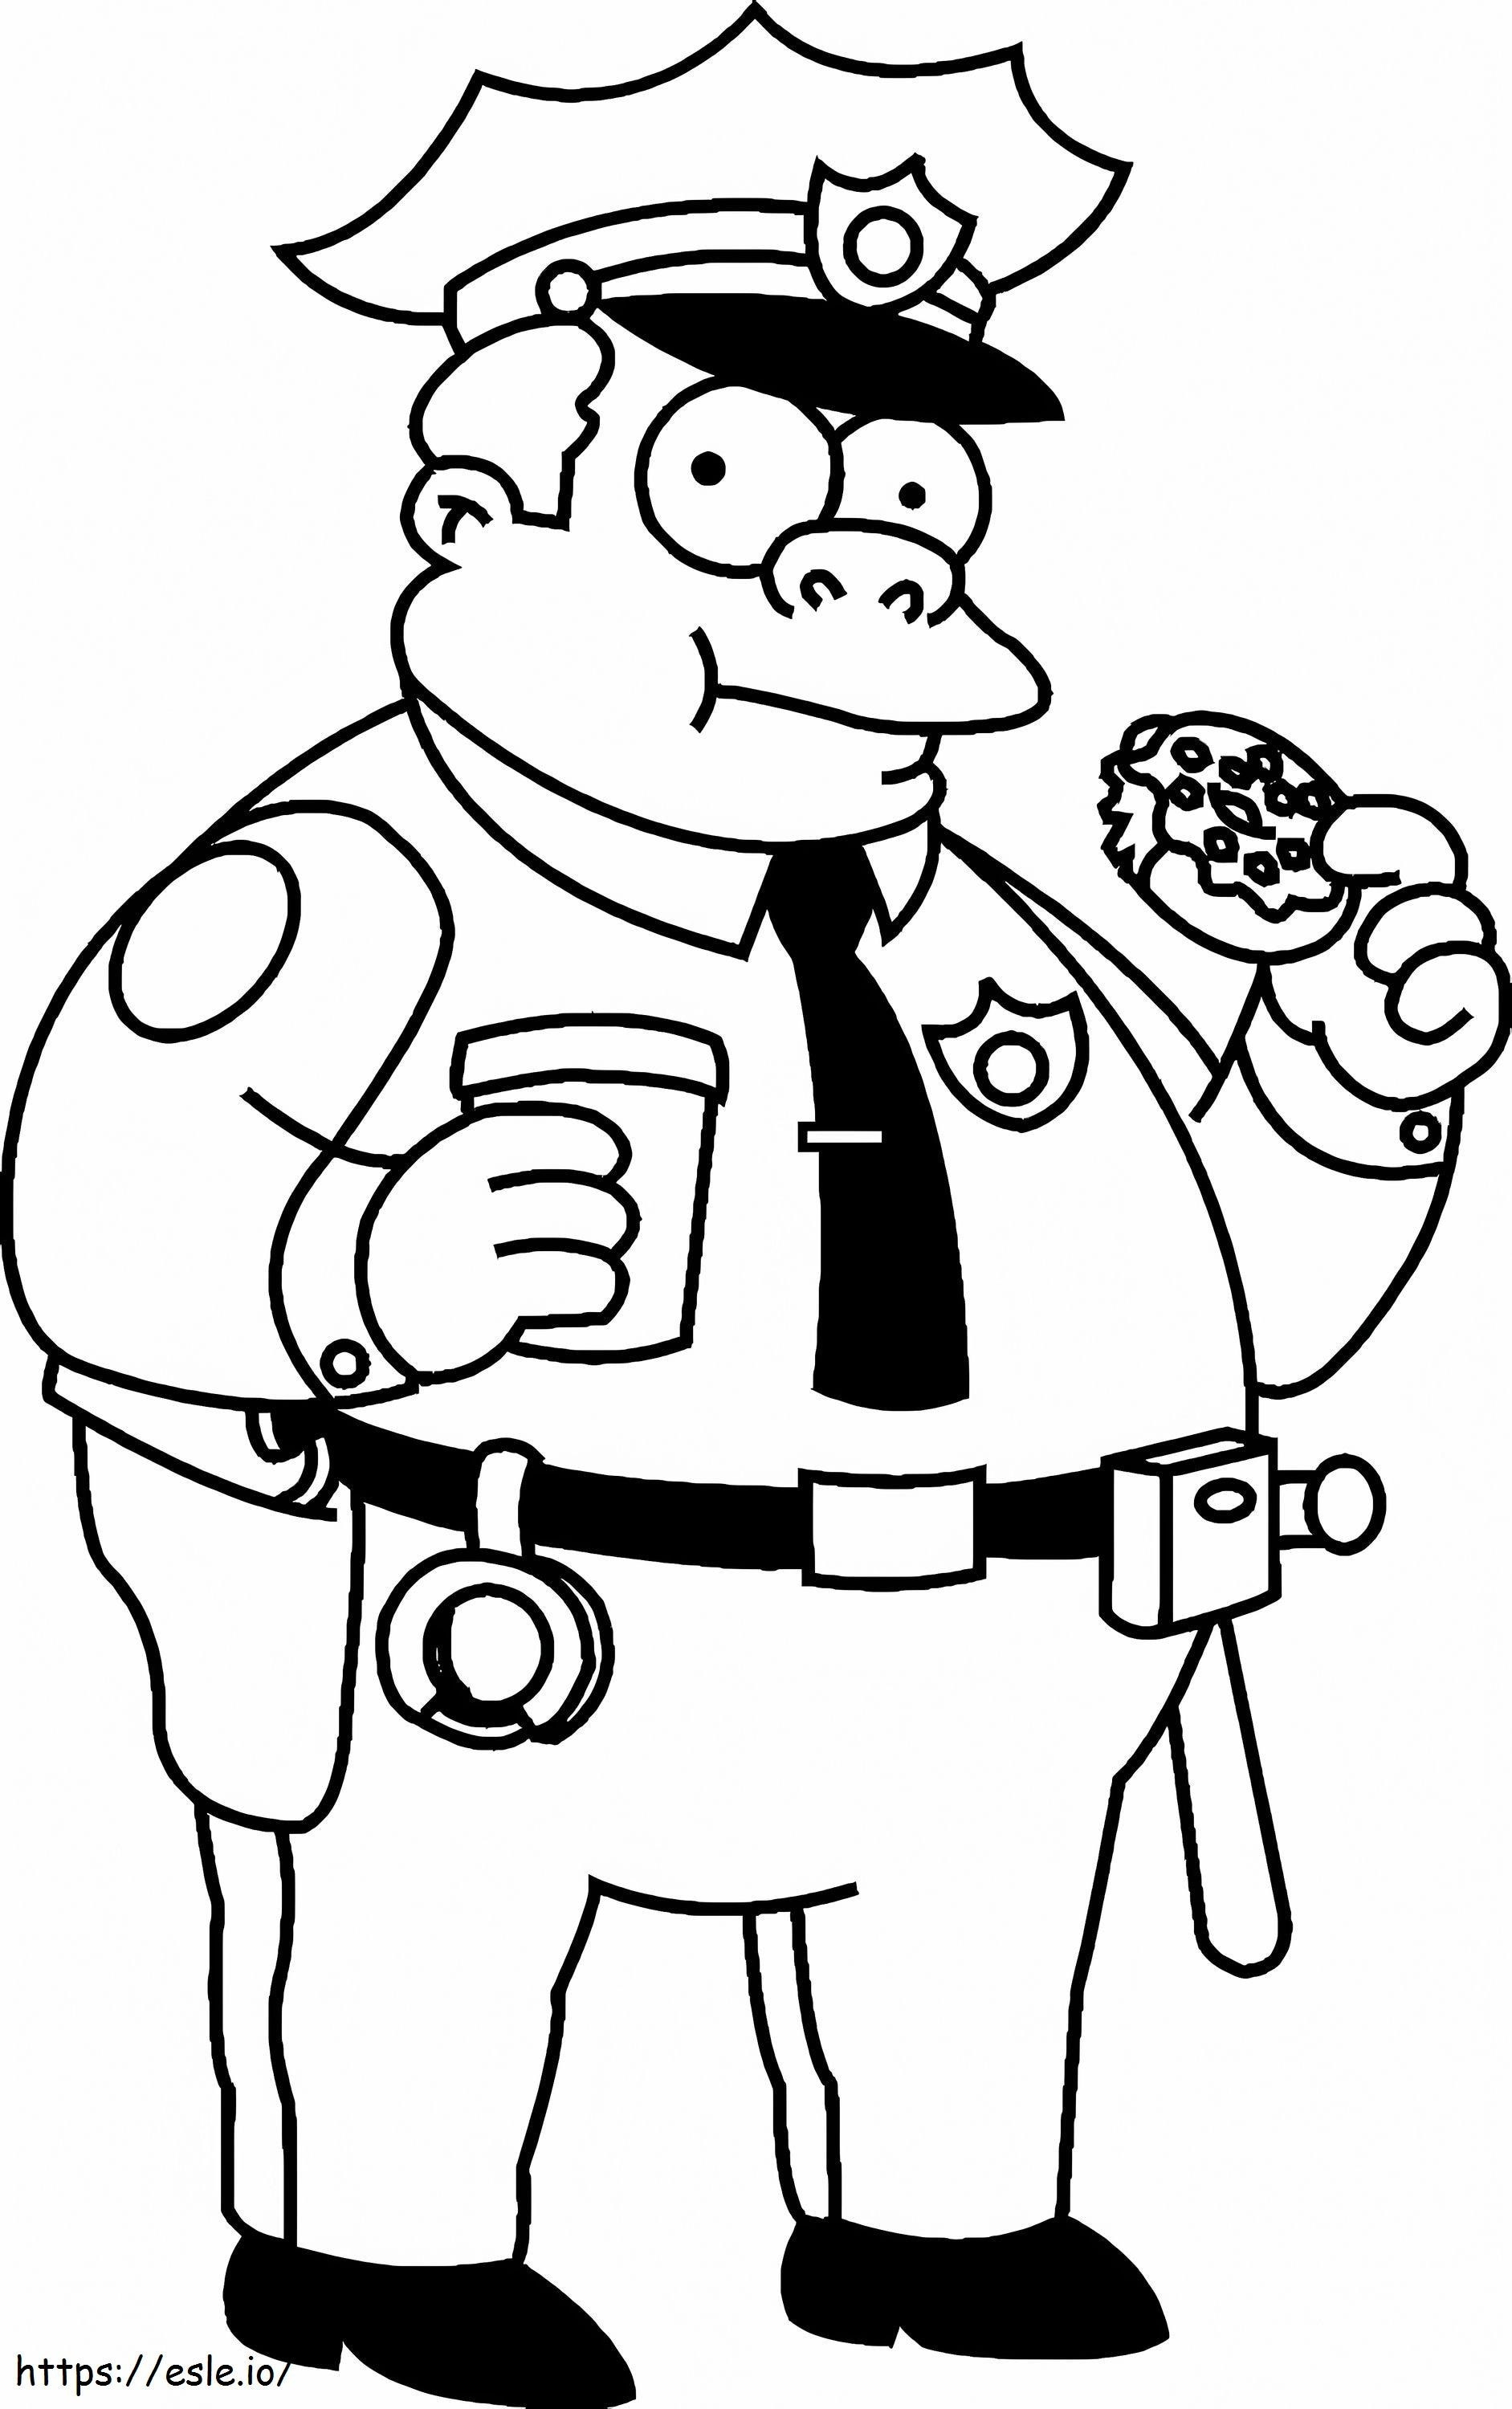 Policial comendo rosquinha dos Simpsons para colorir